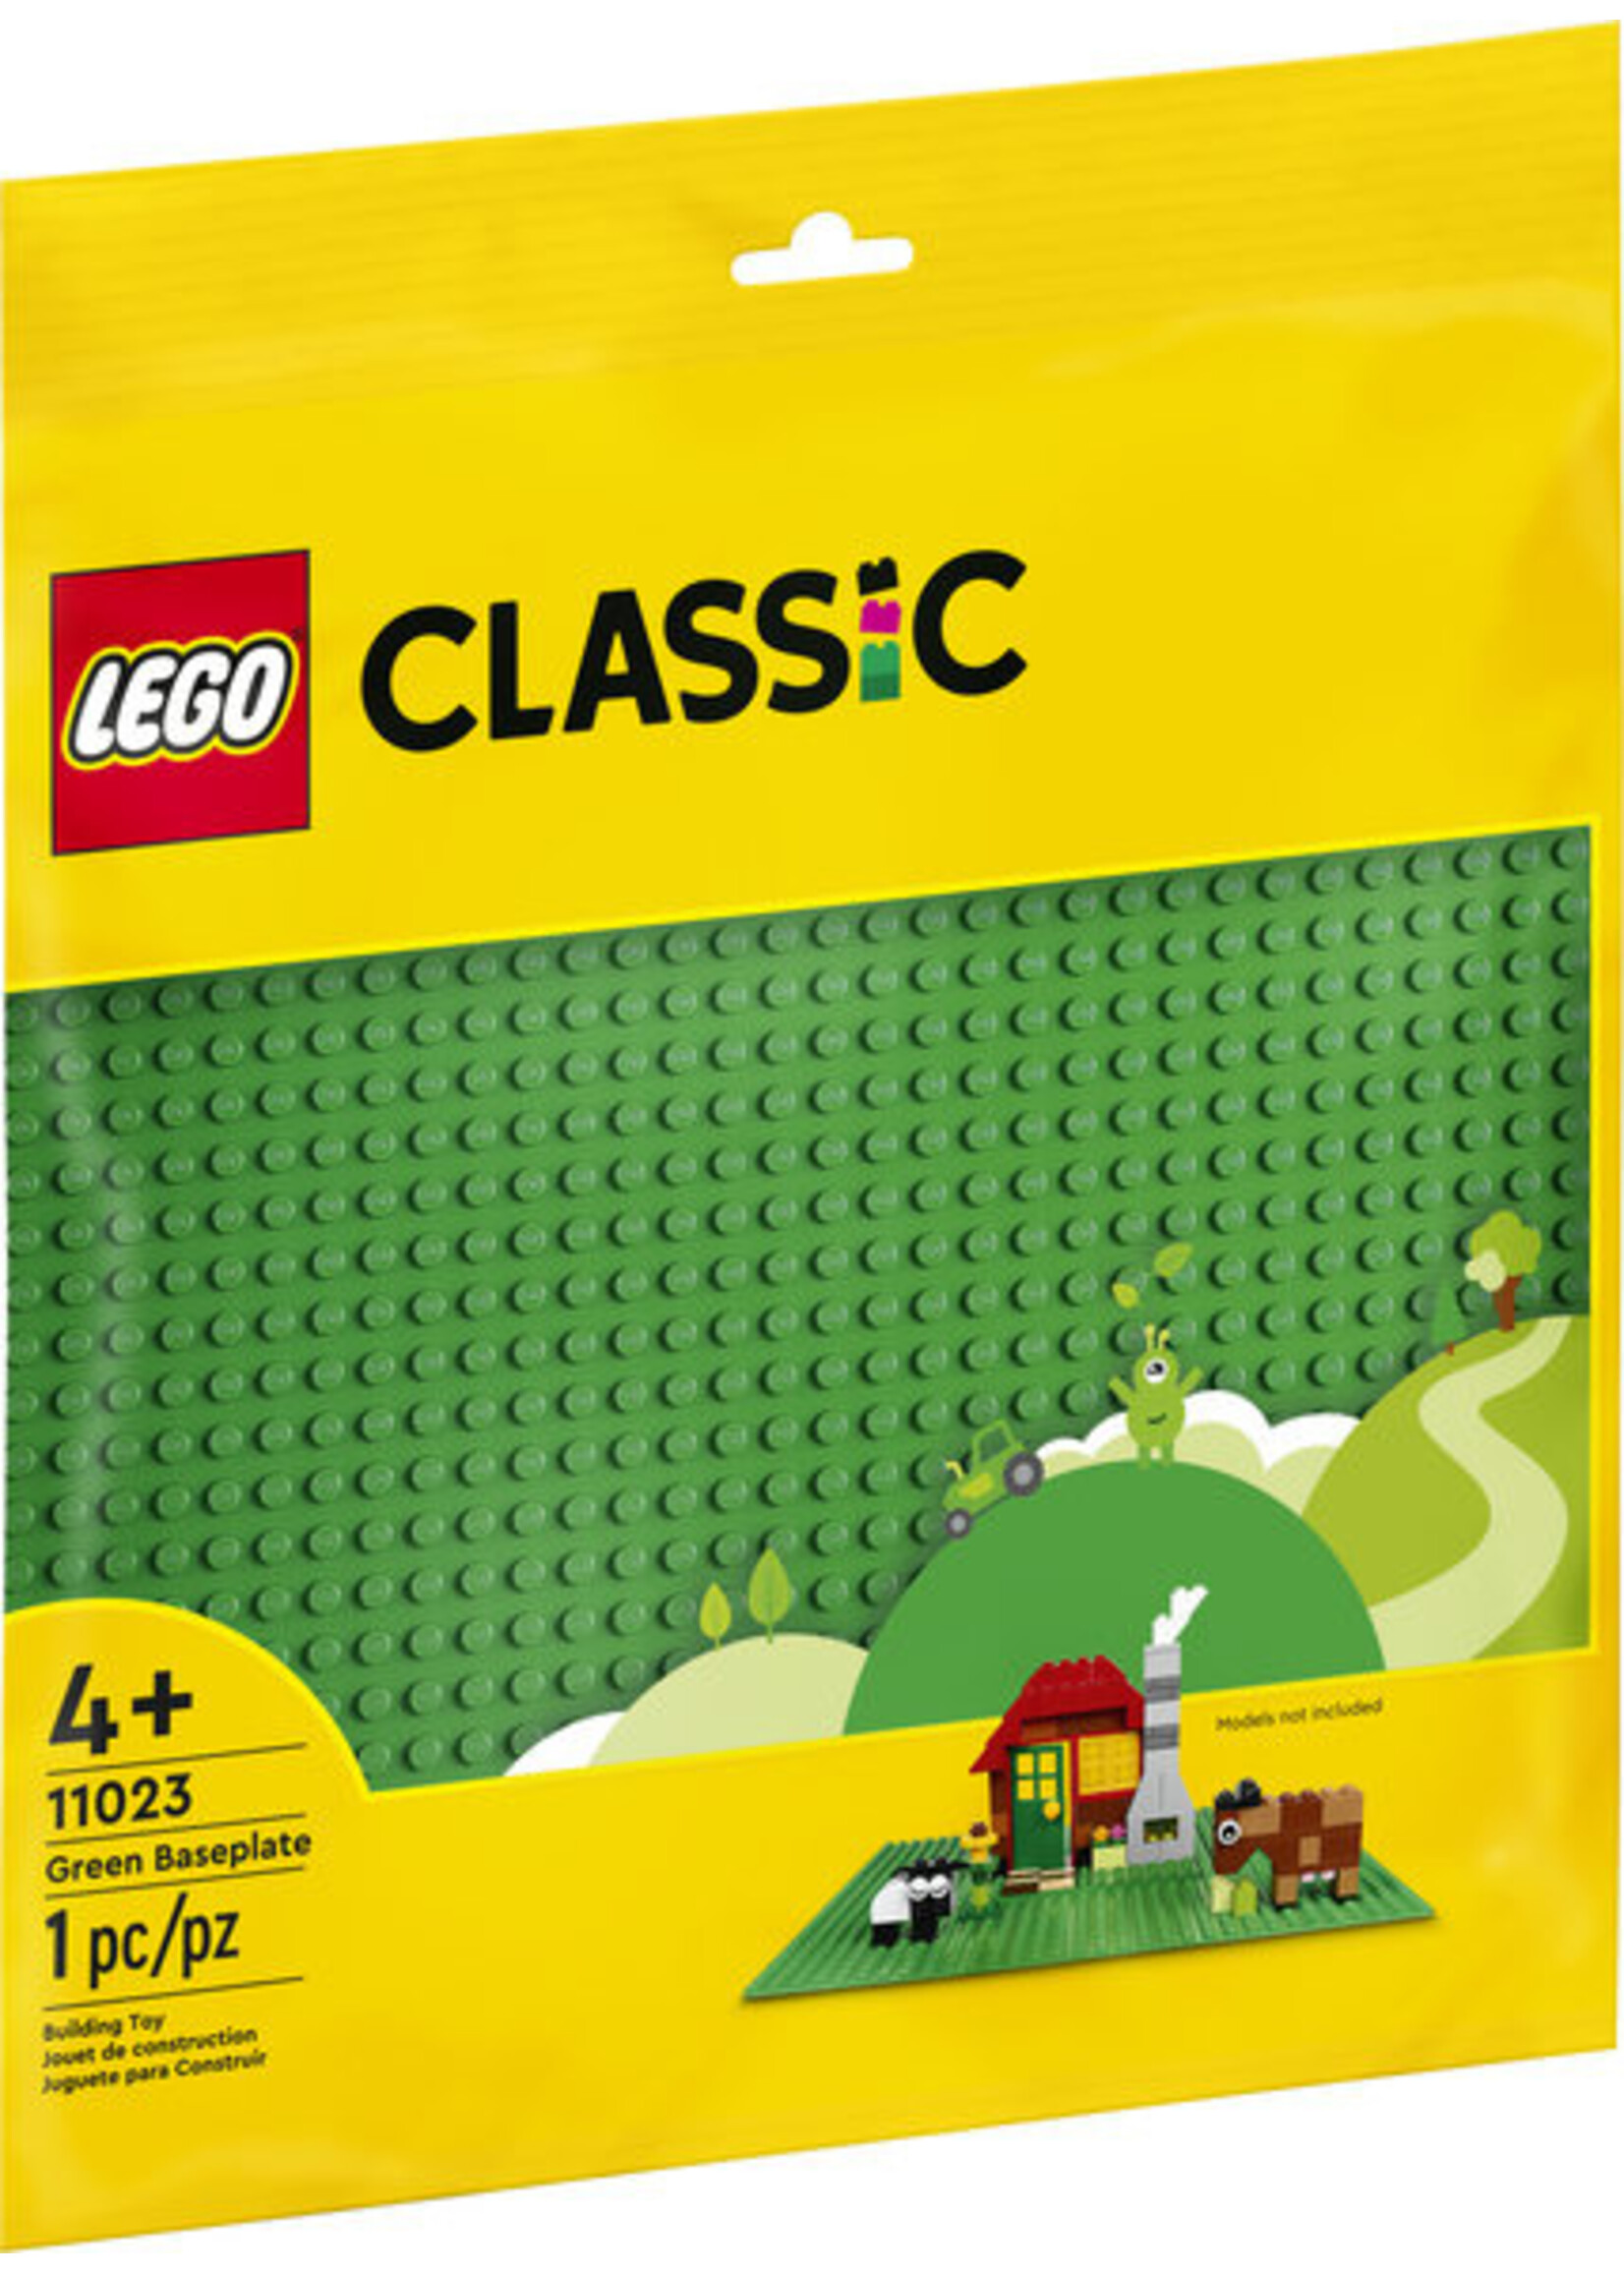 LEGO 11023 - Green Baseplate